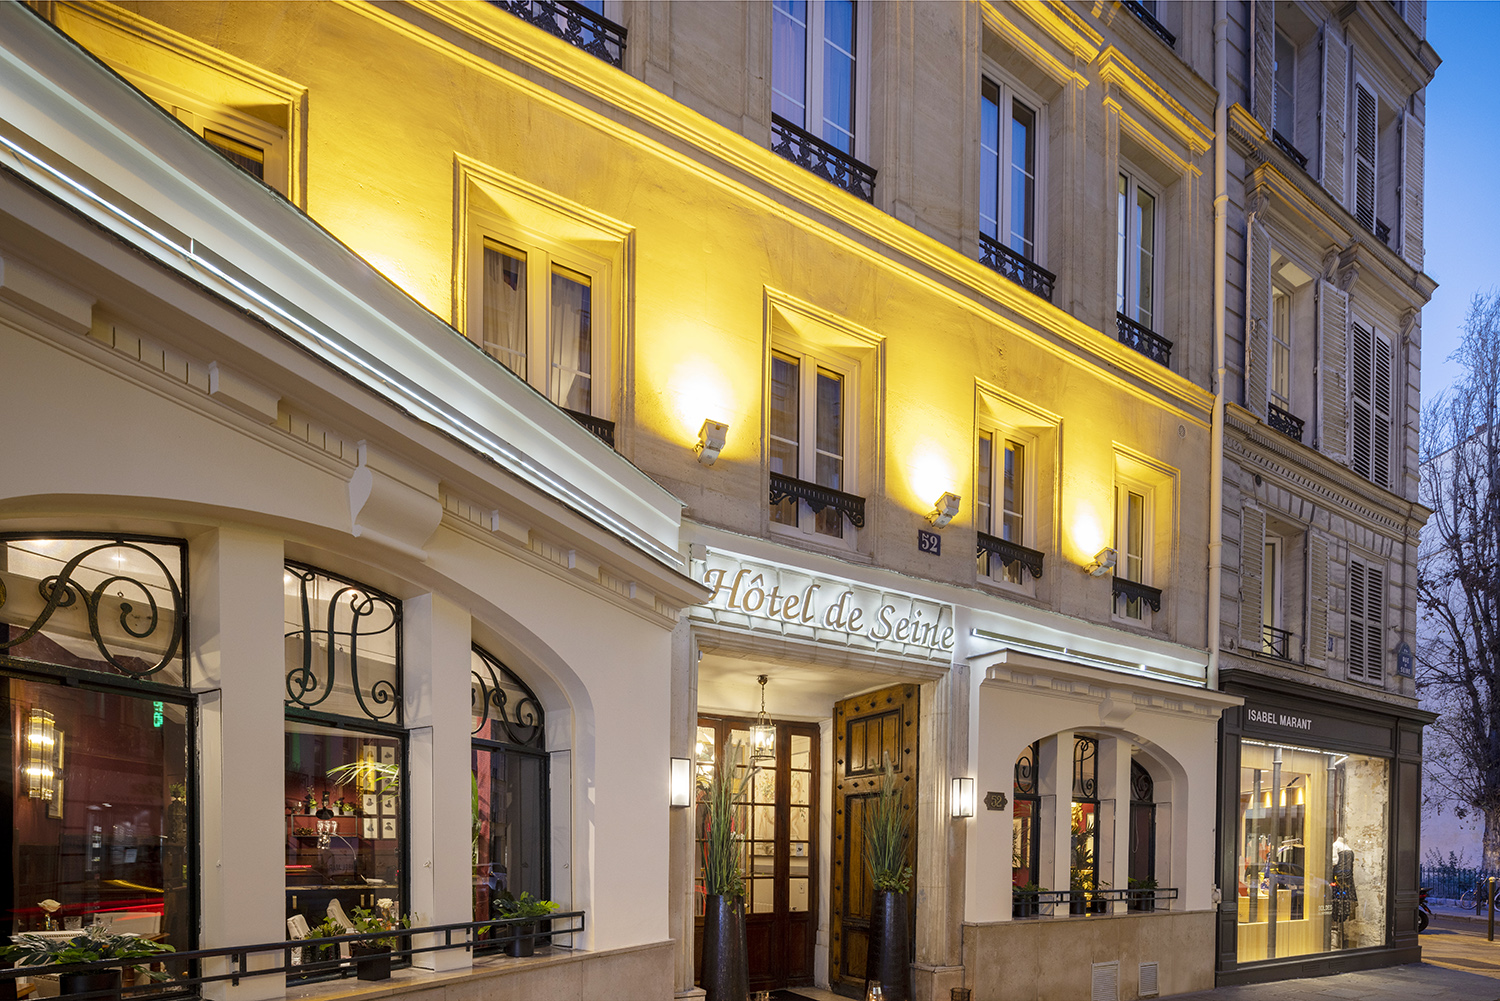 facade Hôtel de Seine de nuit lumières allumées hotel saint germain des prés paris